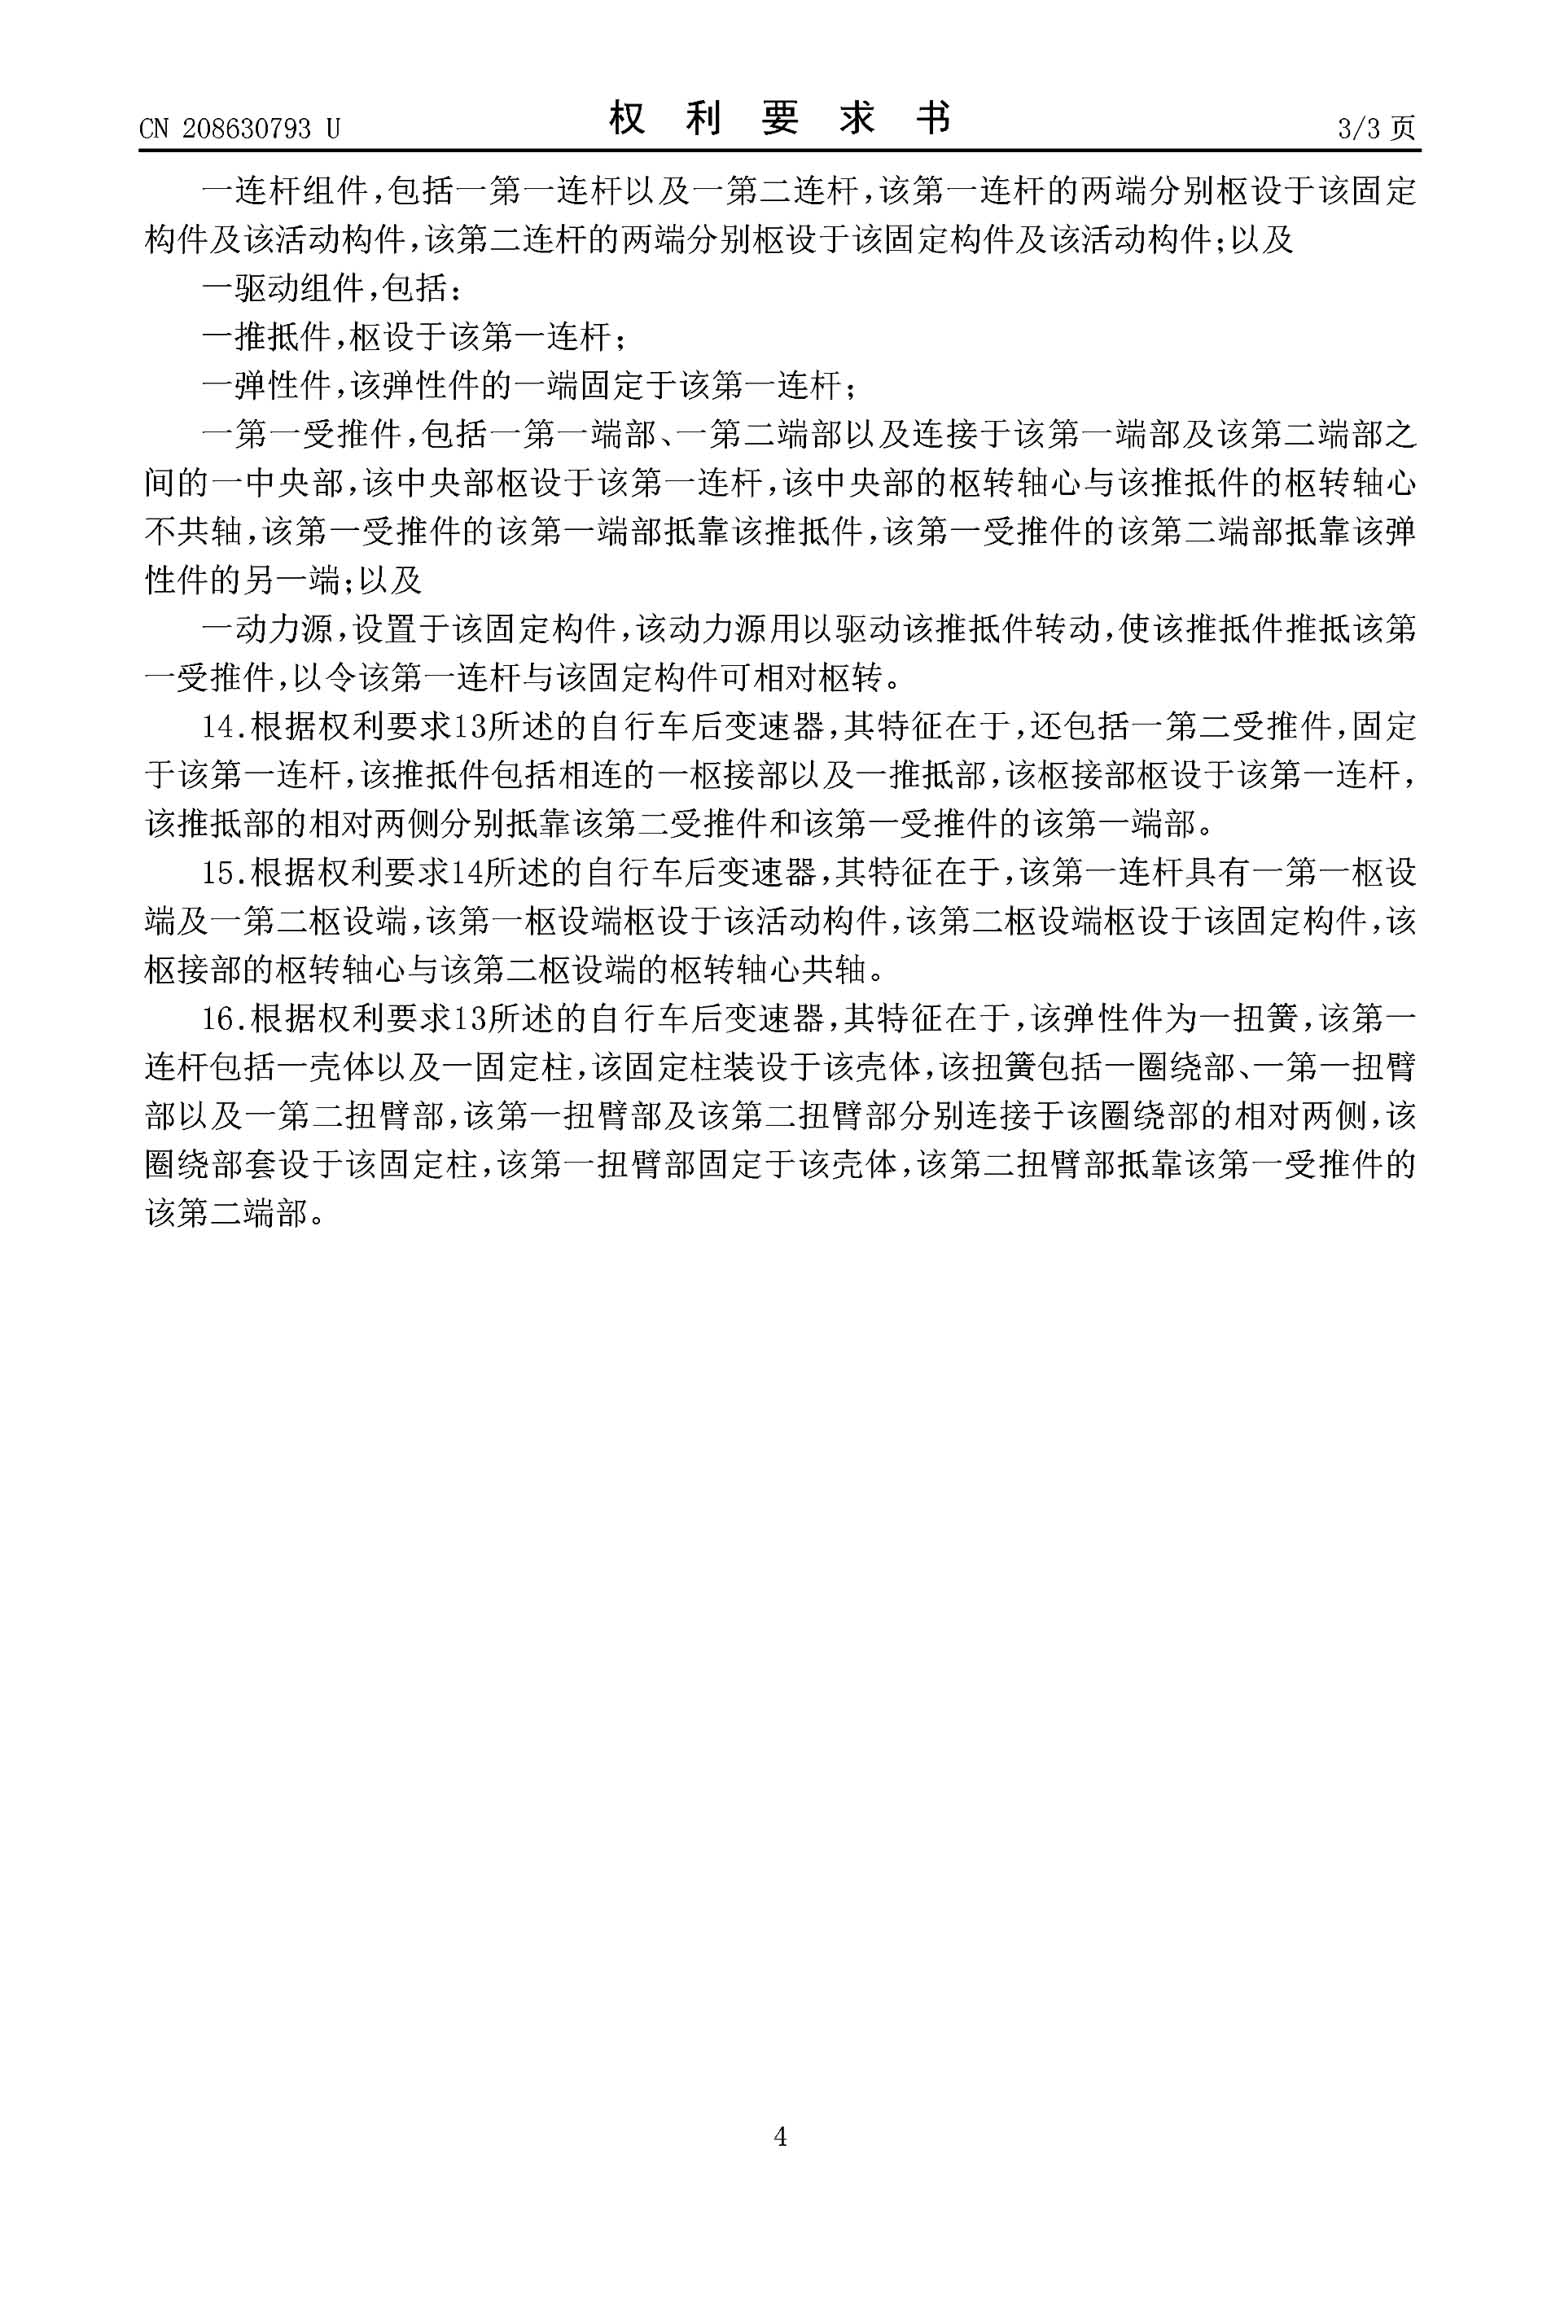 Chinese Patent CN208630793U page 04 main image